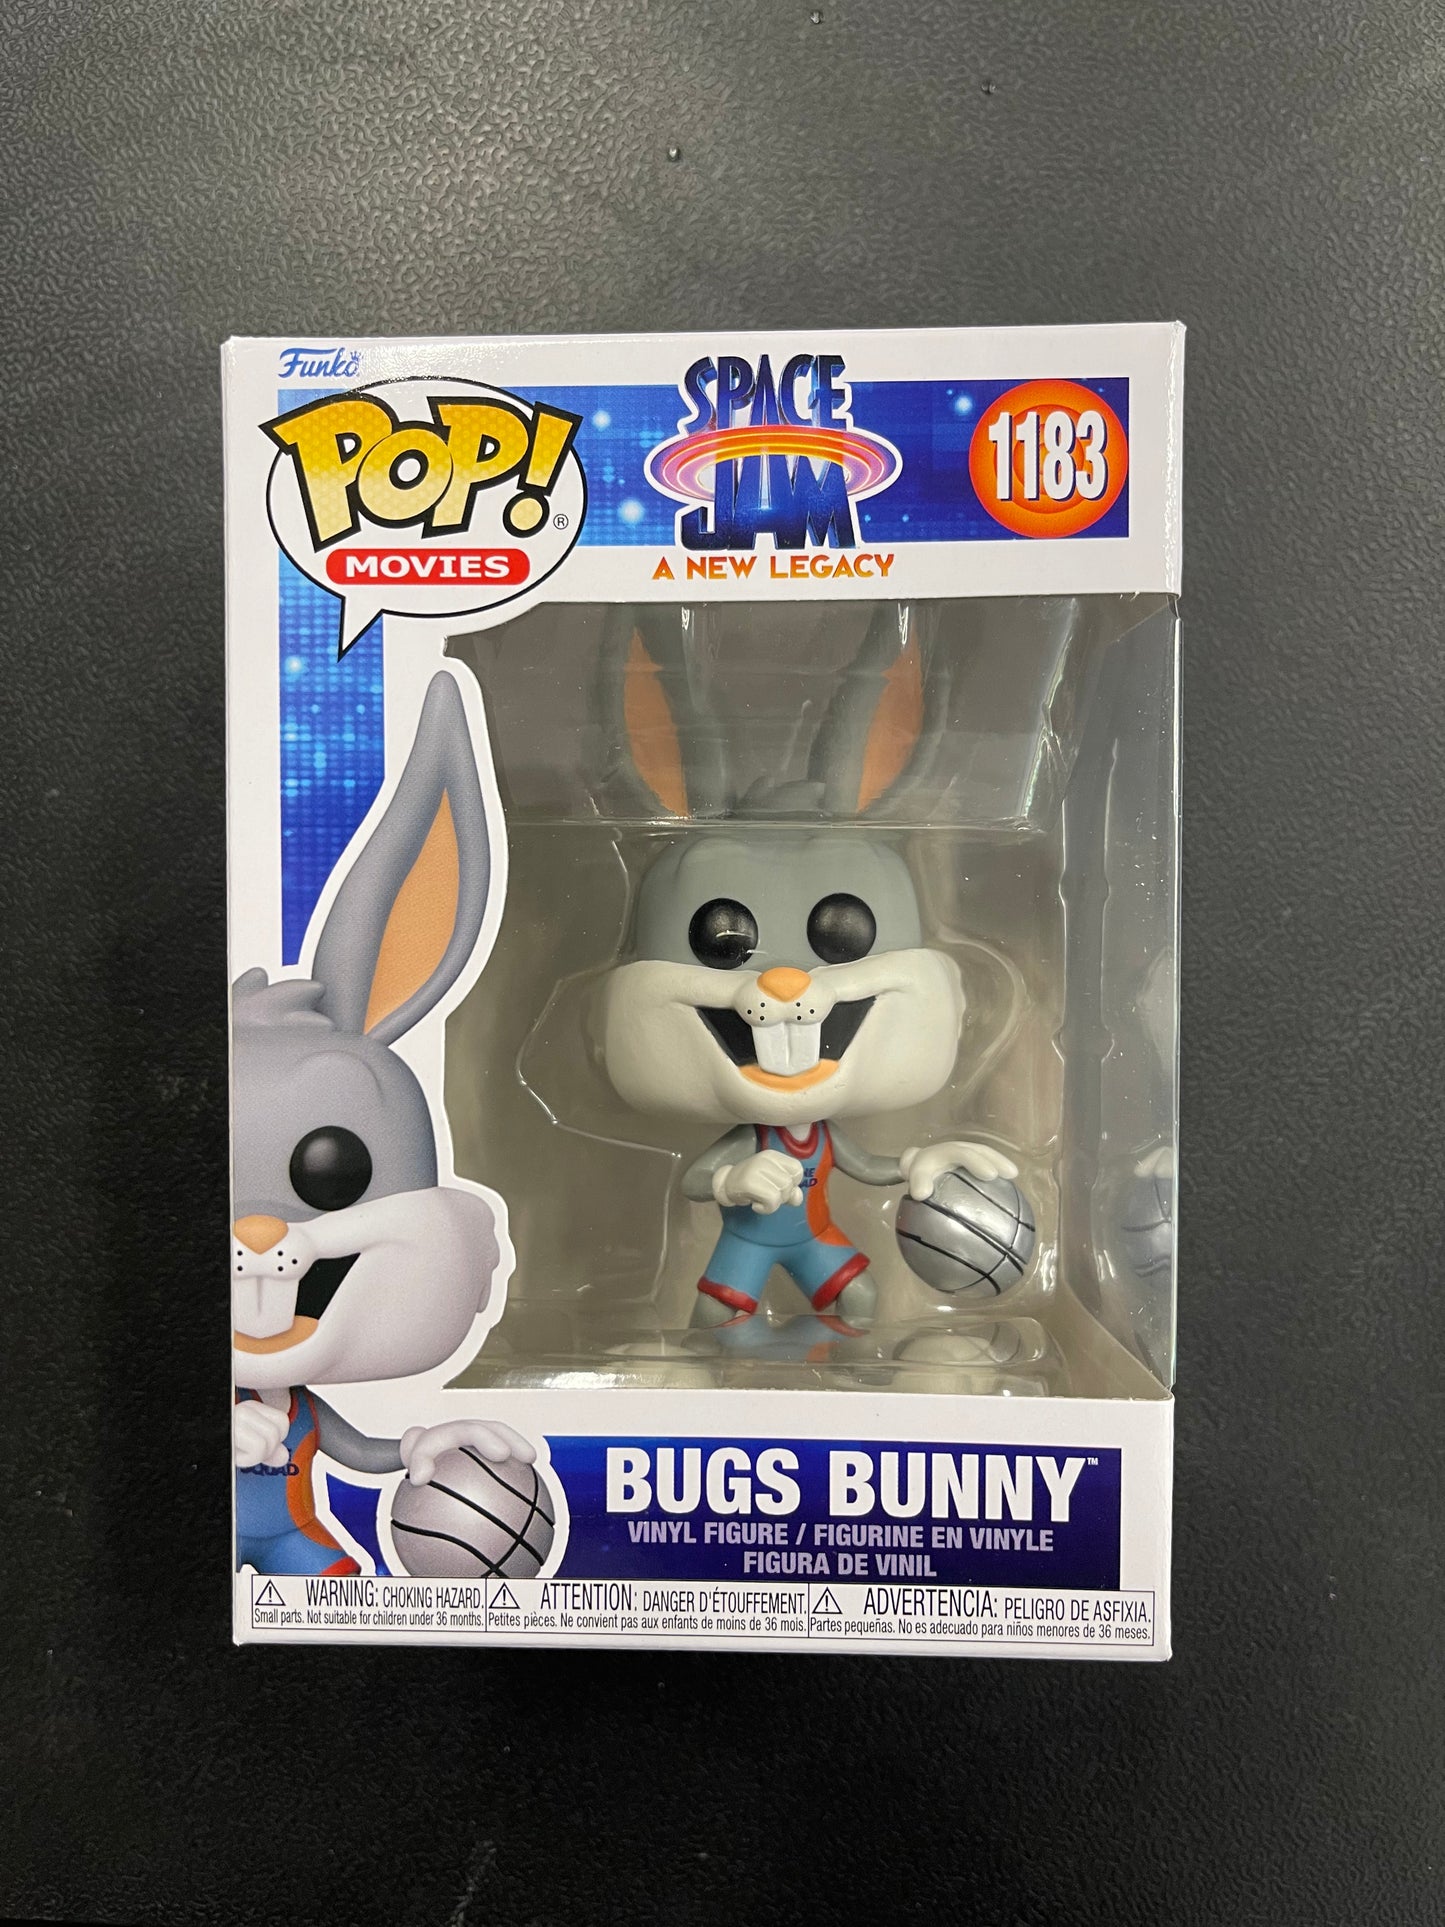 POP! Movies Space Jam Bugs Bunny #1183